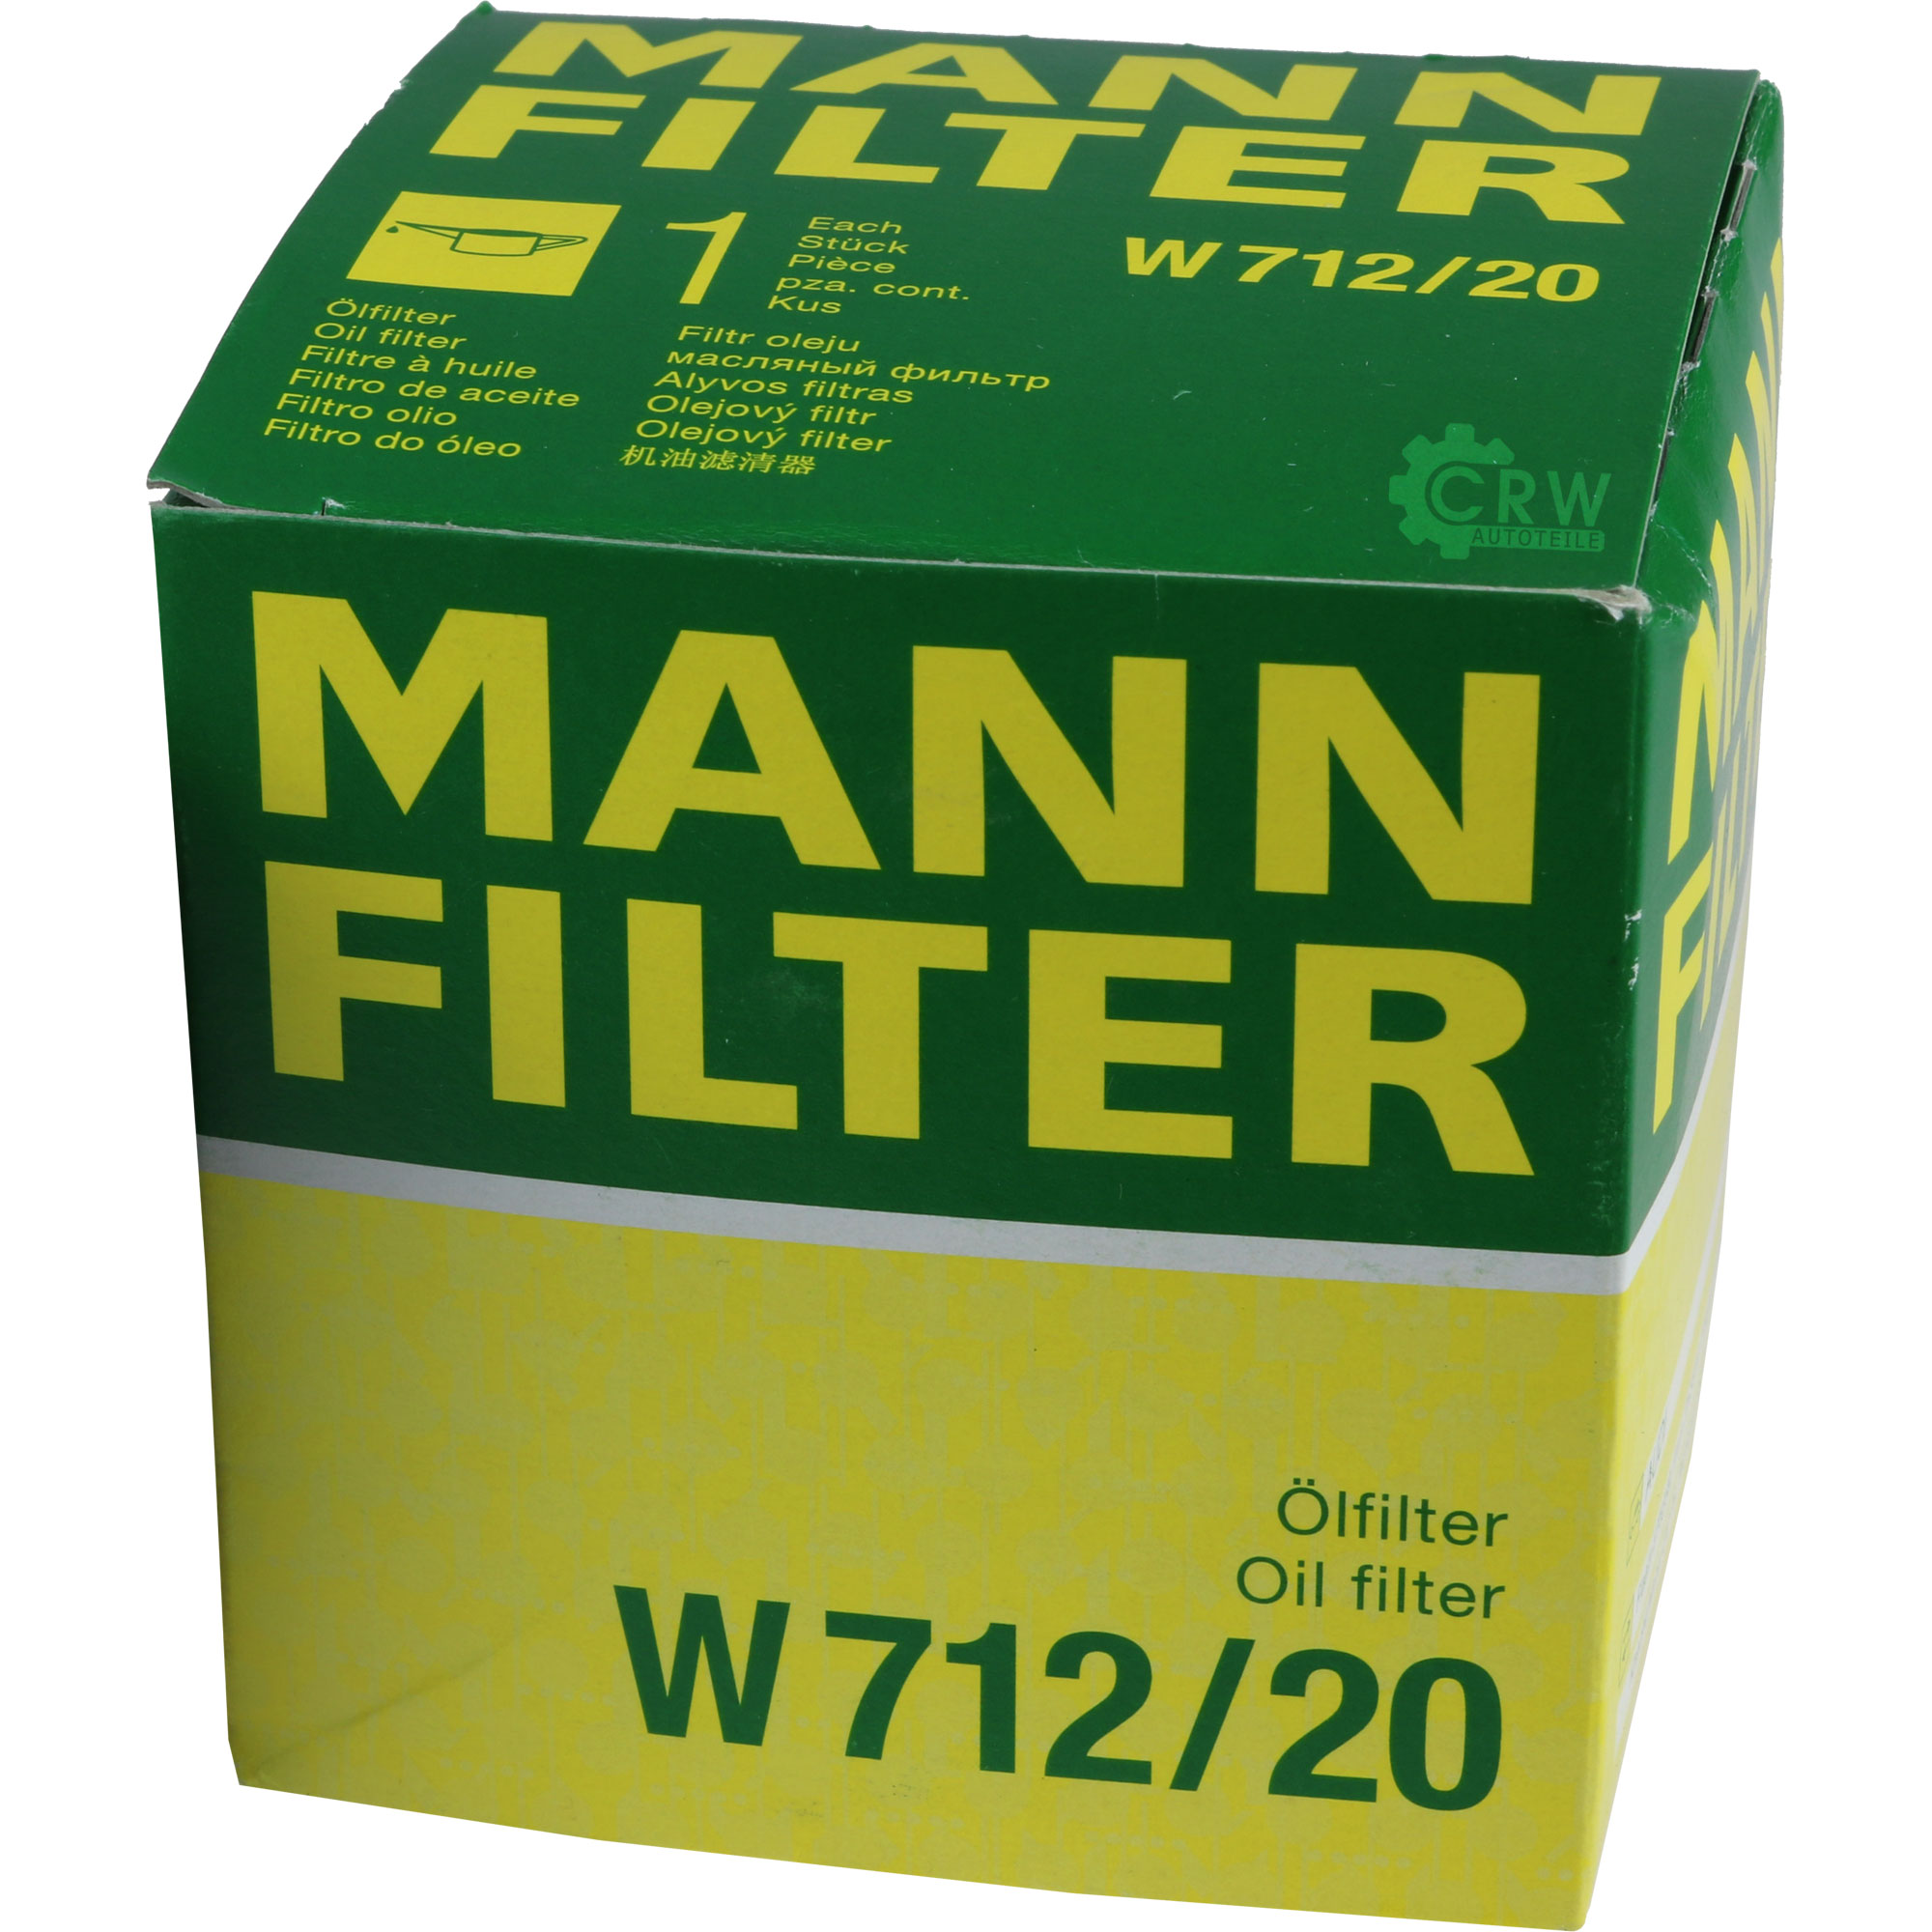 MANN-FILTER Ölfilter W 712/20 Oil Filter